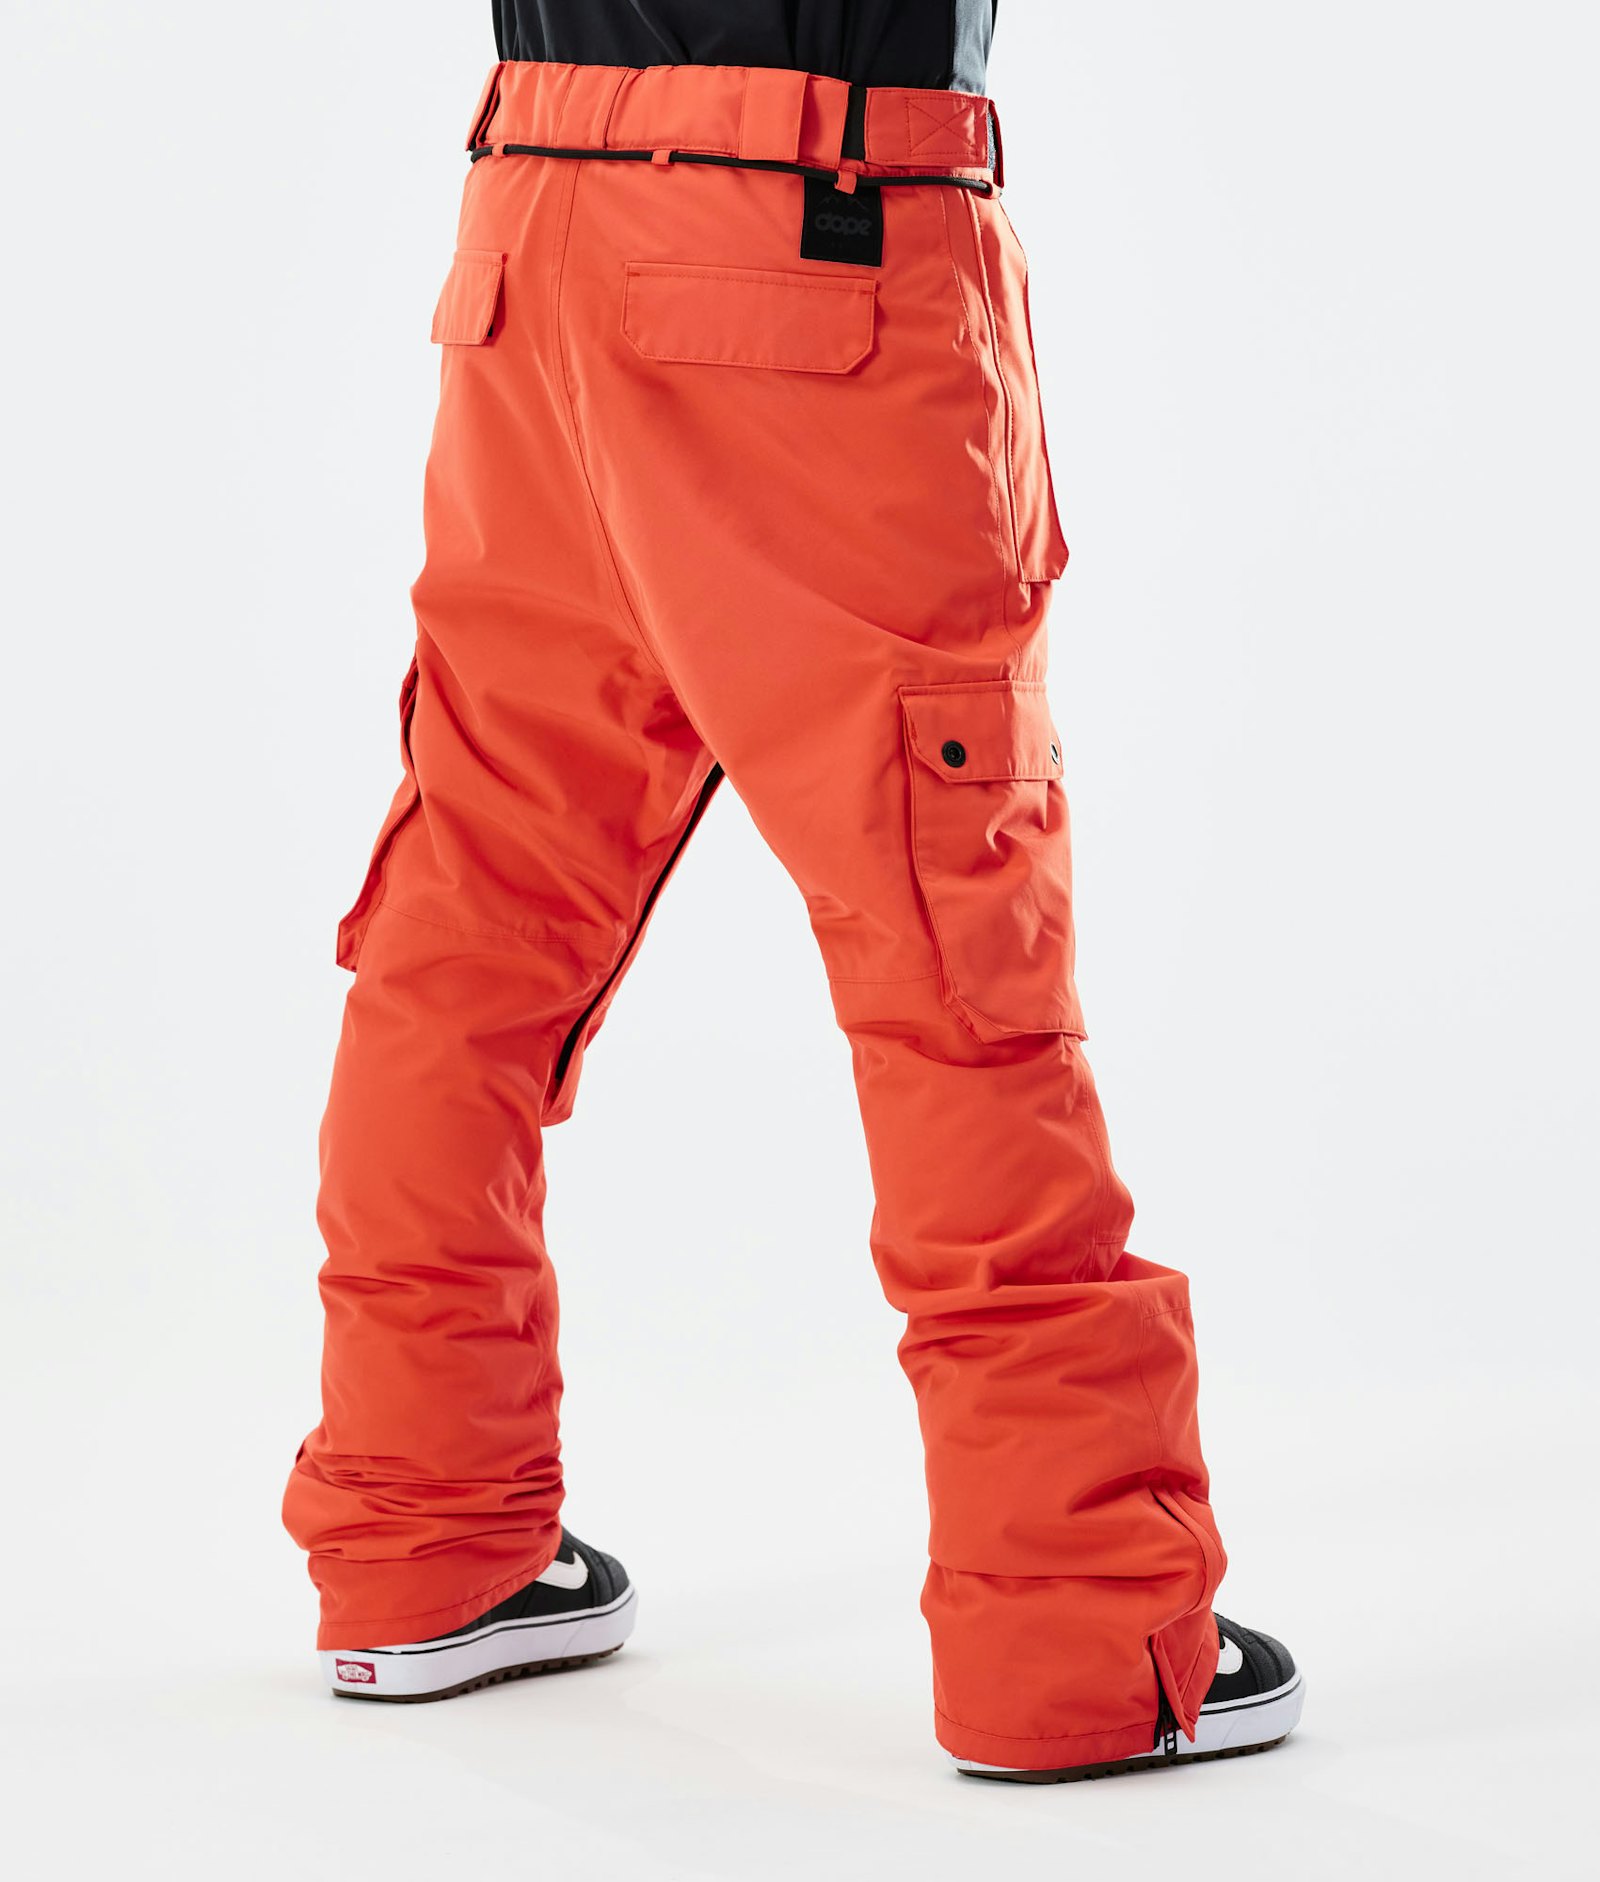 Iconic 2021 Pantaloni Snowboard Uomo Orange Renewed, Immagine 3 di 6